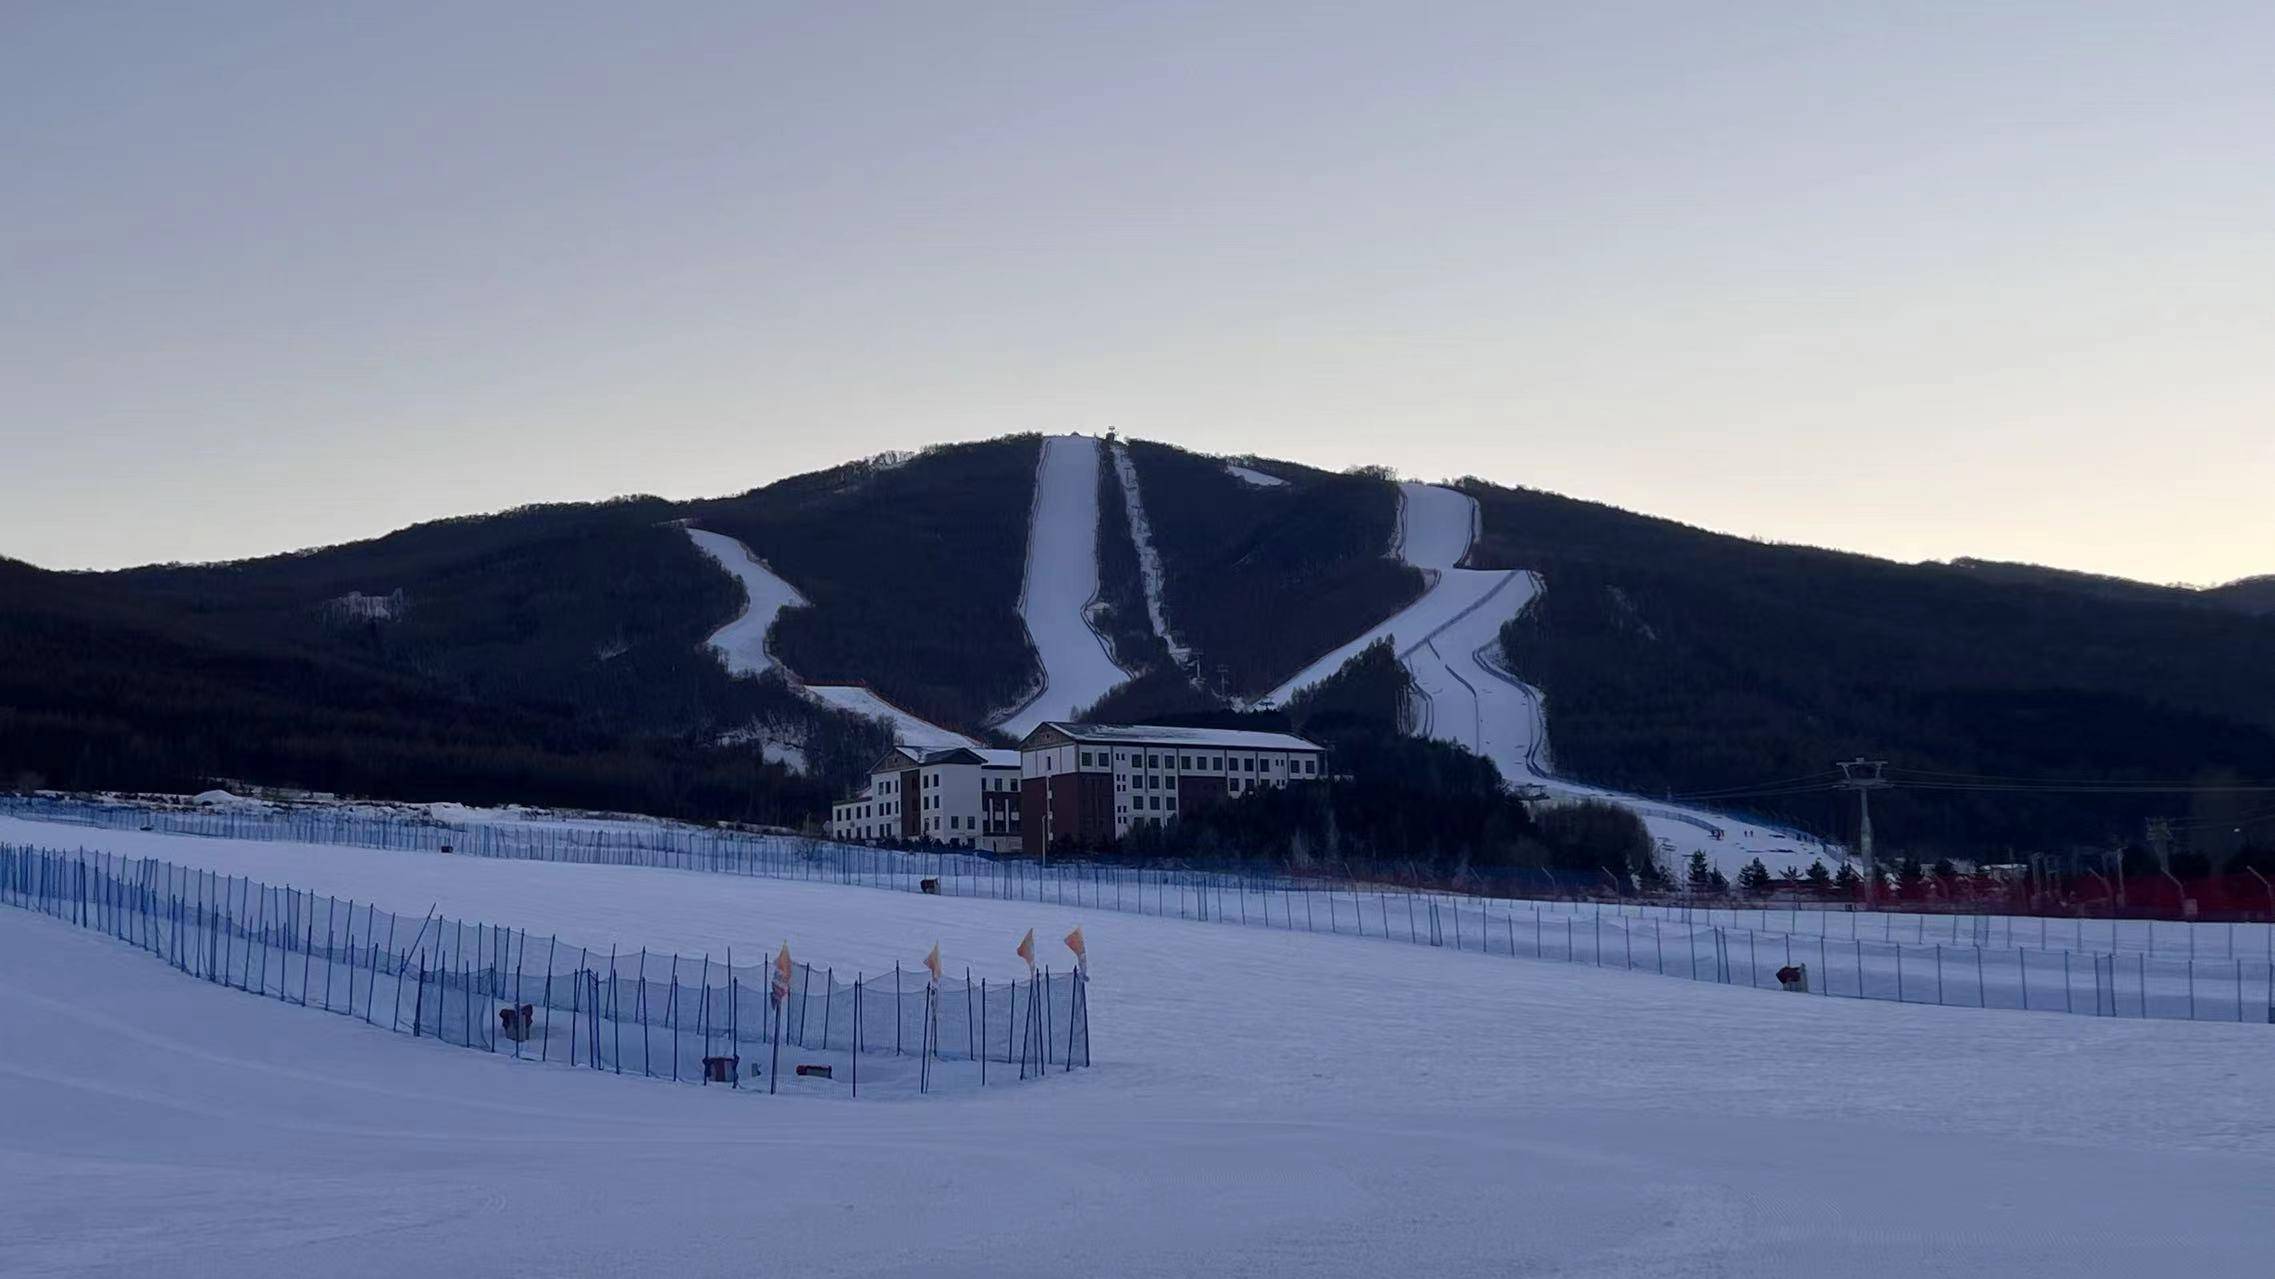 美林谷滑雪场海拔图片